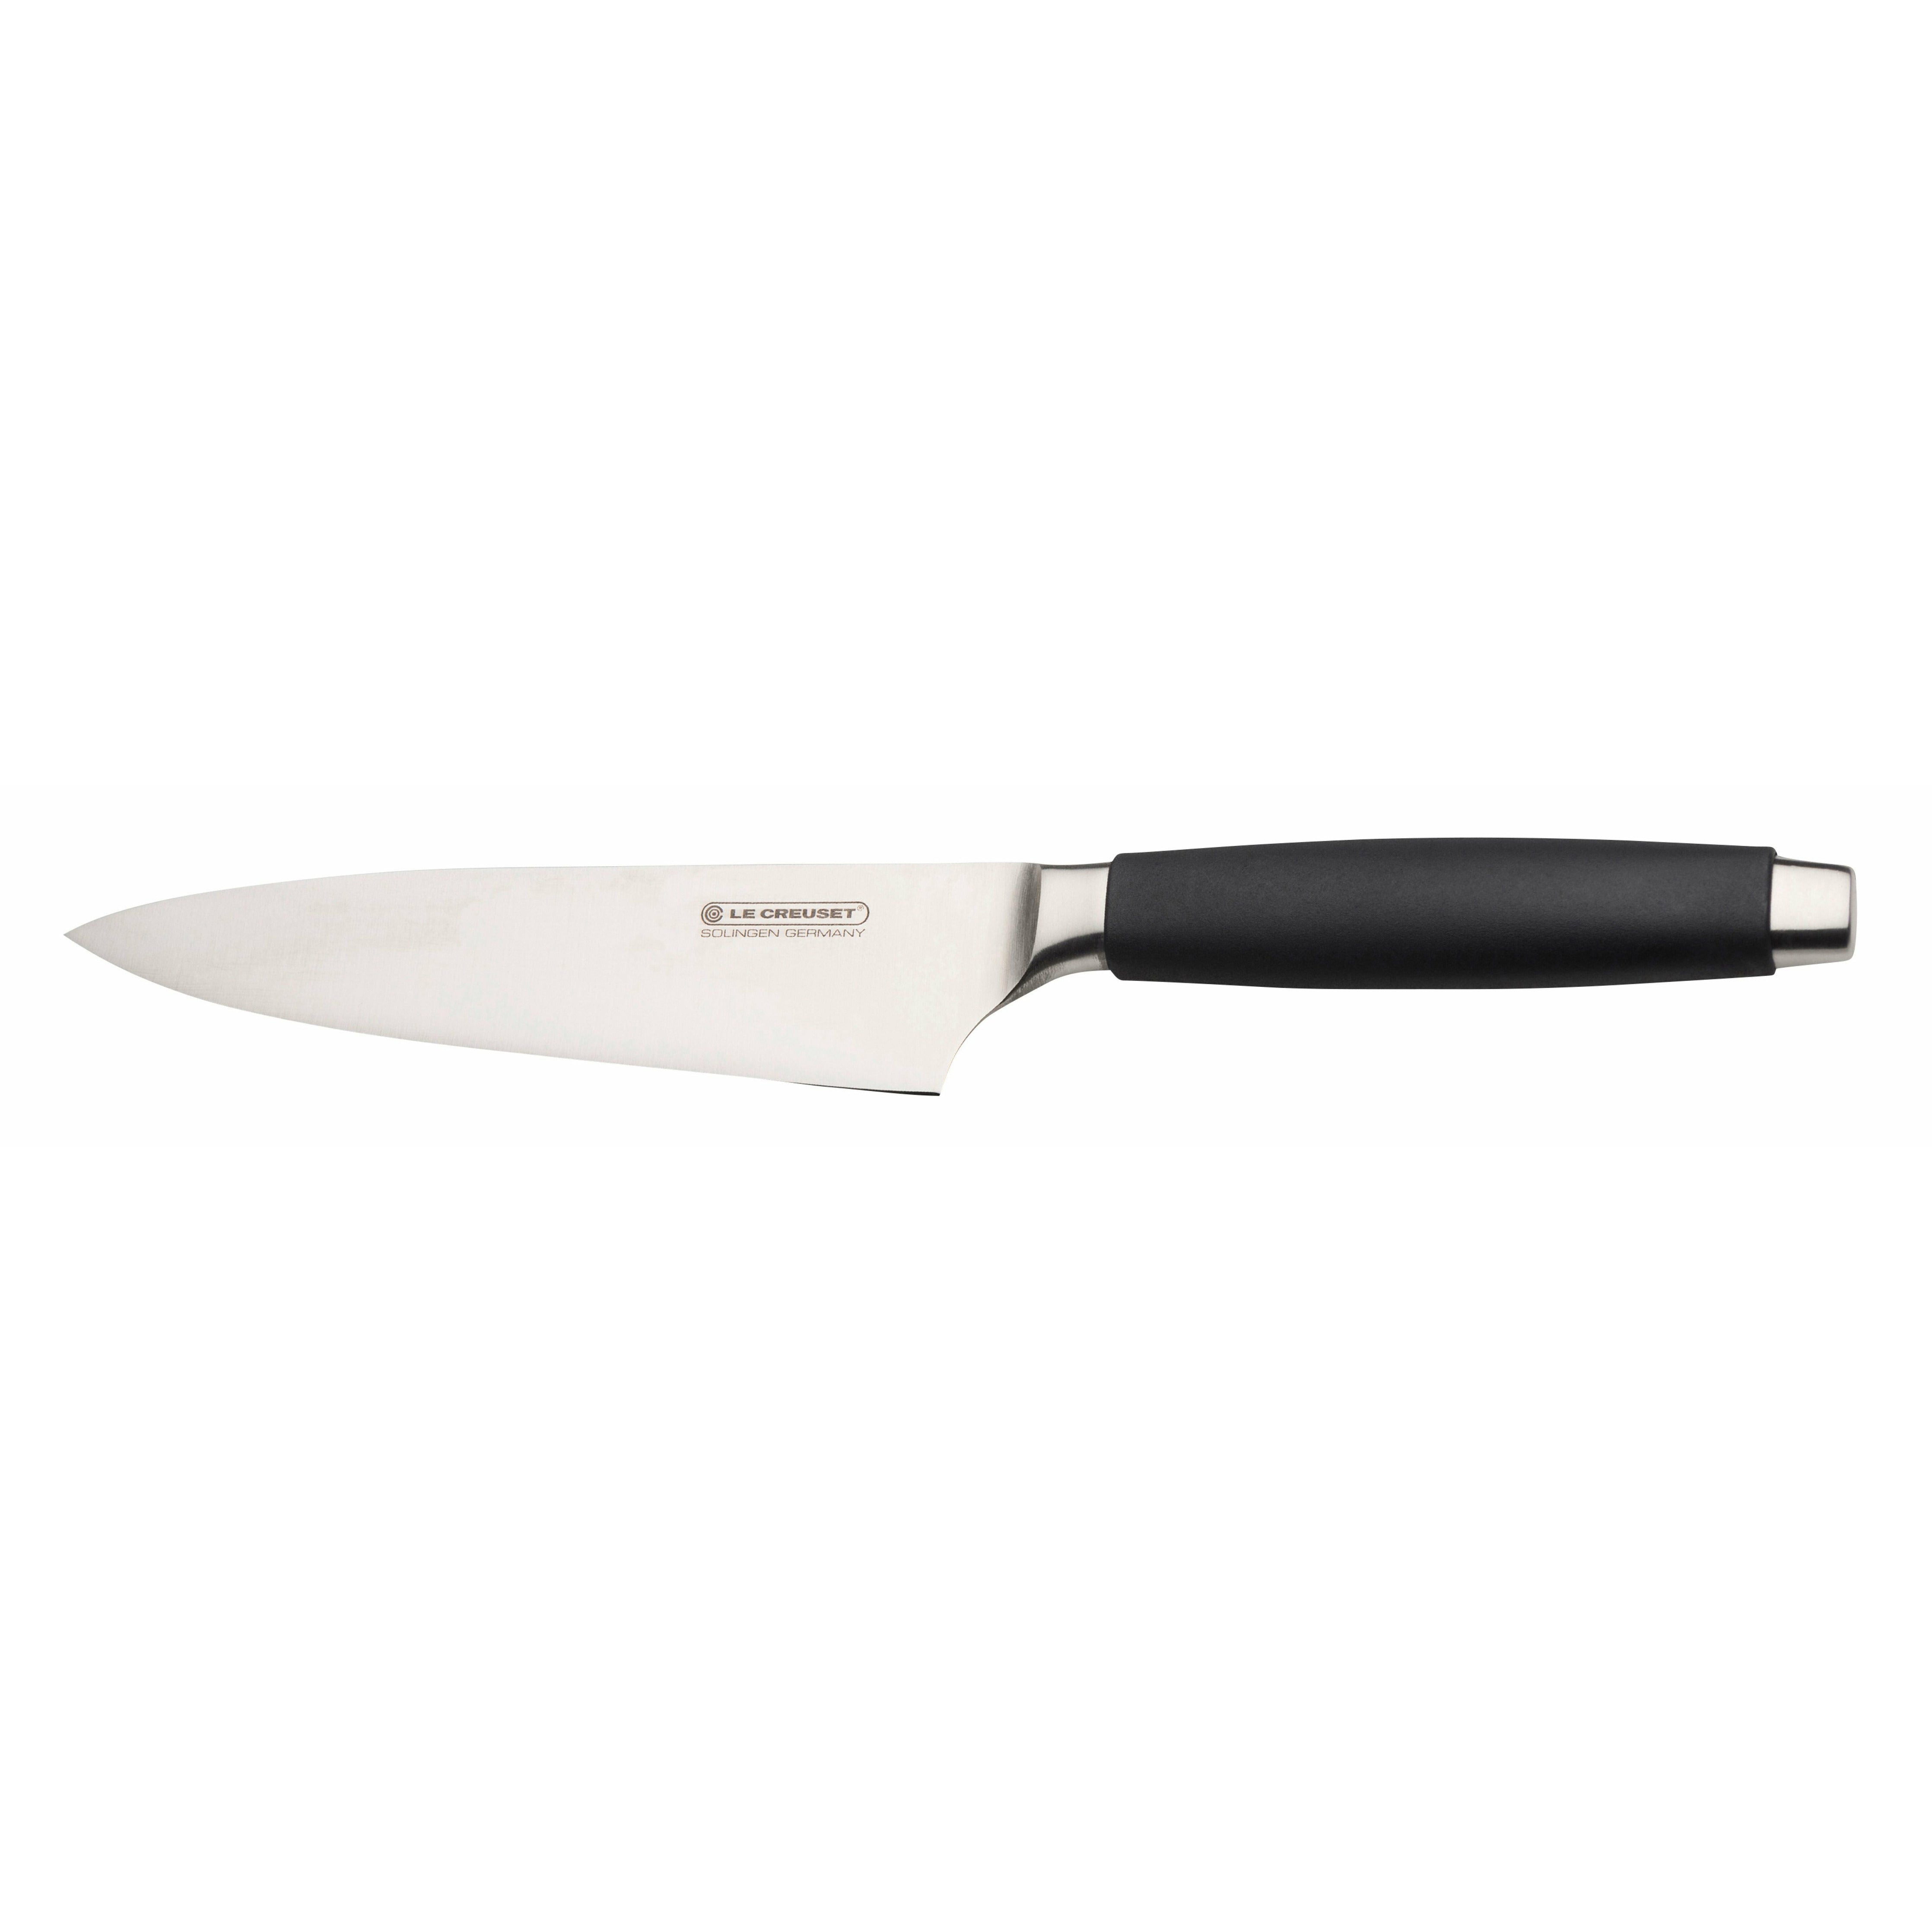 Le couteau du Creuset Chef avec poignée noire, 15 cm